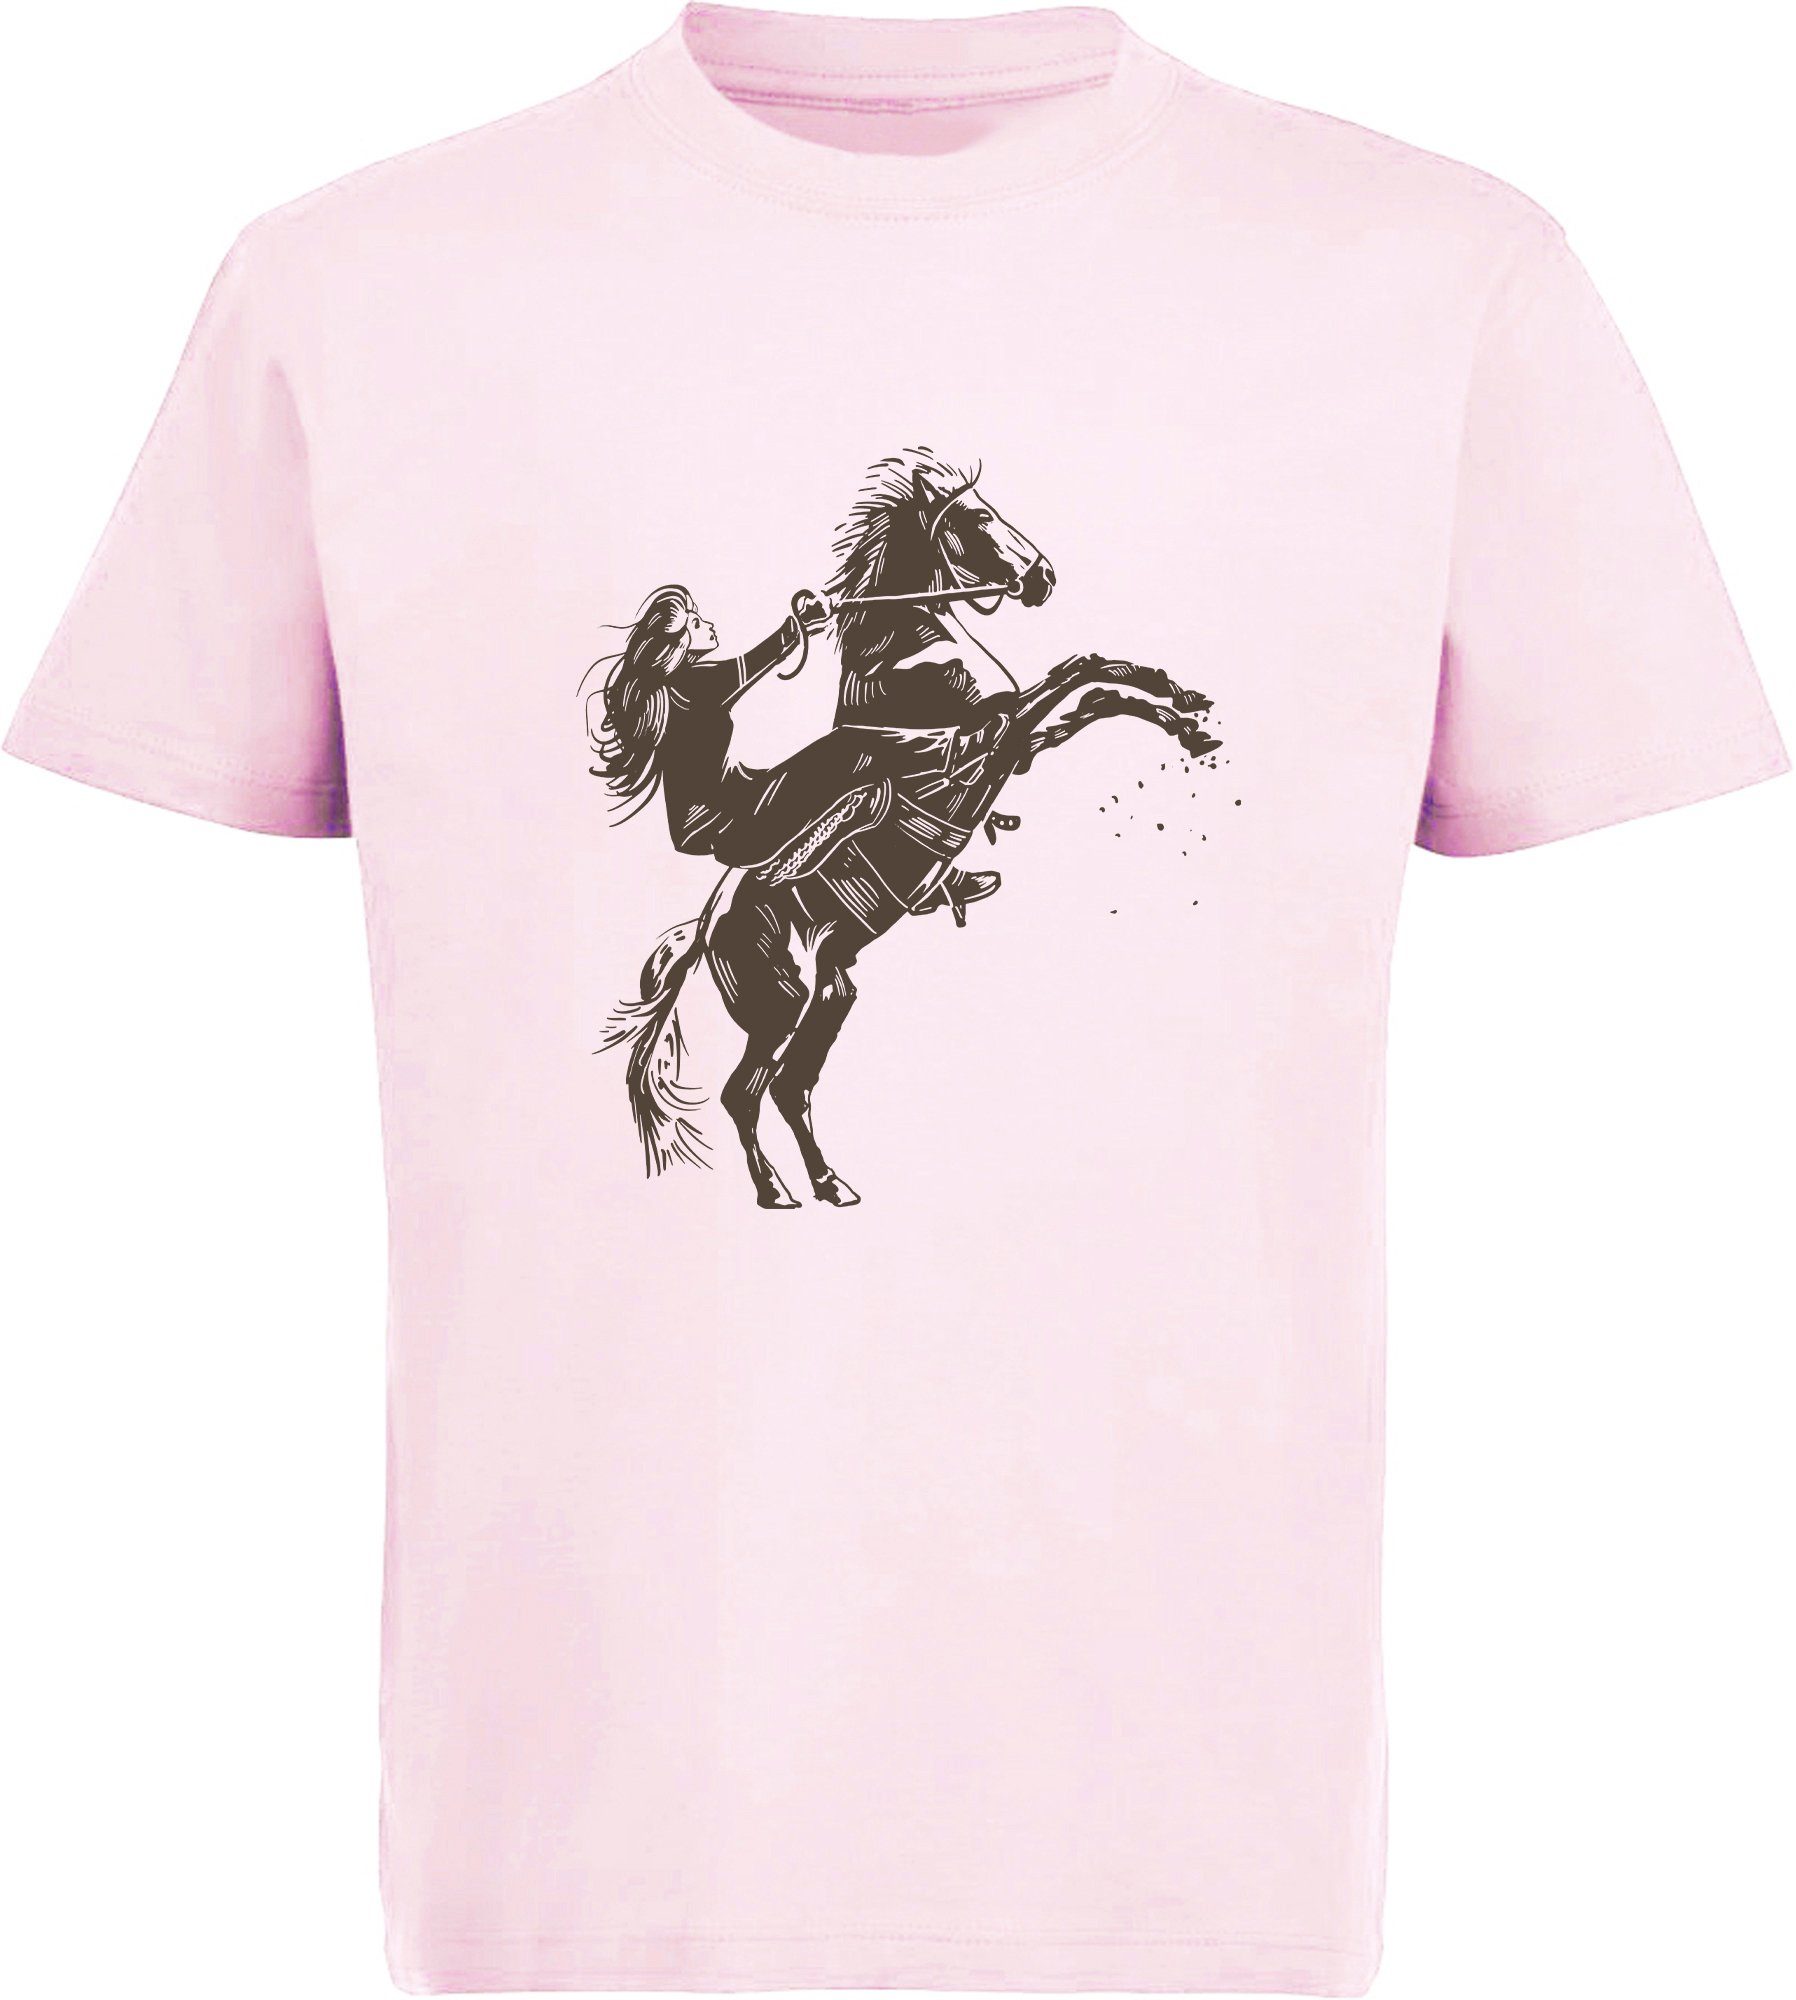 MyDesign24 T-Shirt Kinder Pferde Print Shirt bedruckt - Aufsteigendes Pferd mit Reiter Baumwollshirt mit Aufdruck, i252 rosa